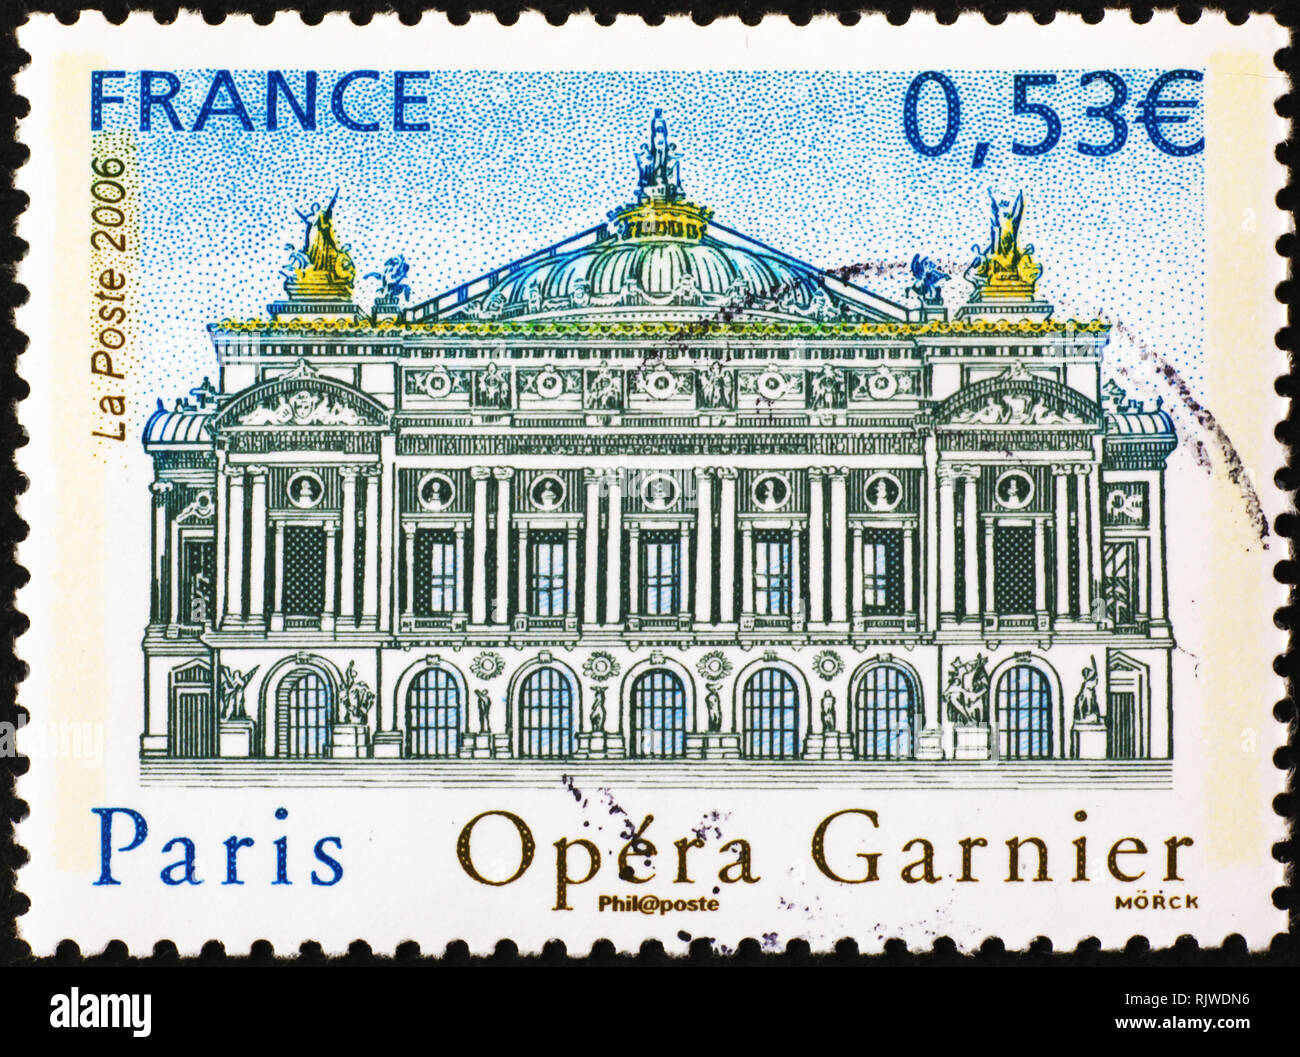 Paris Opera Garnier sur timbre-poste français Banque D'Images